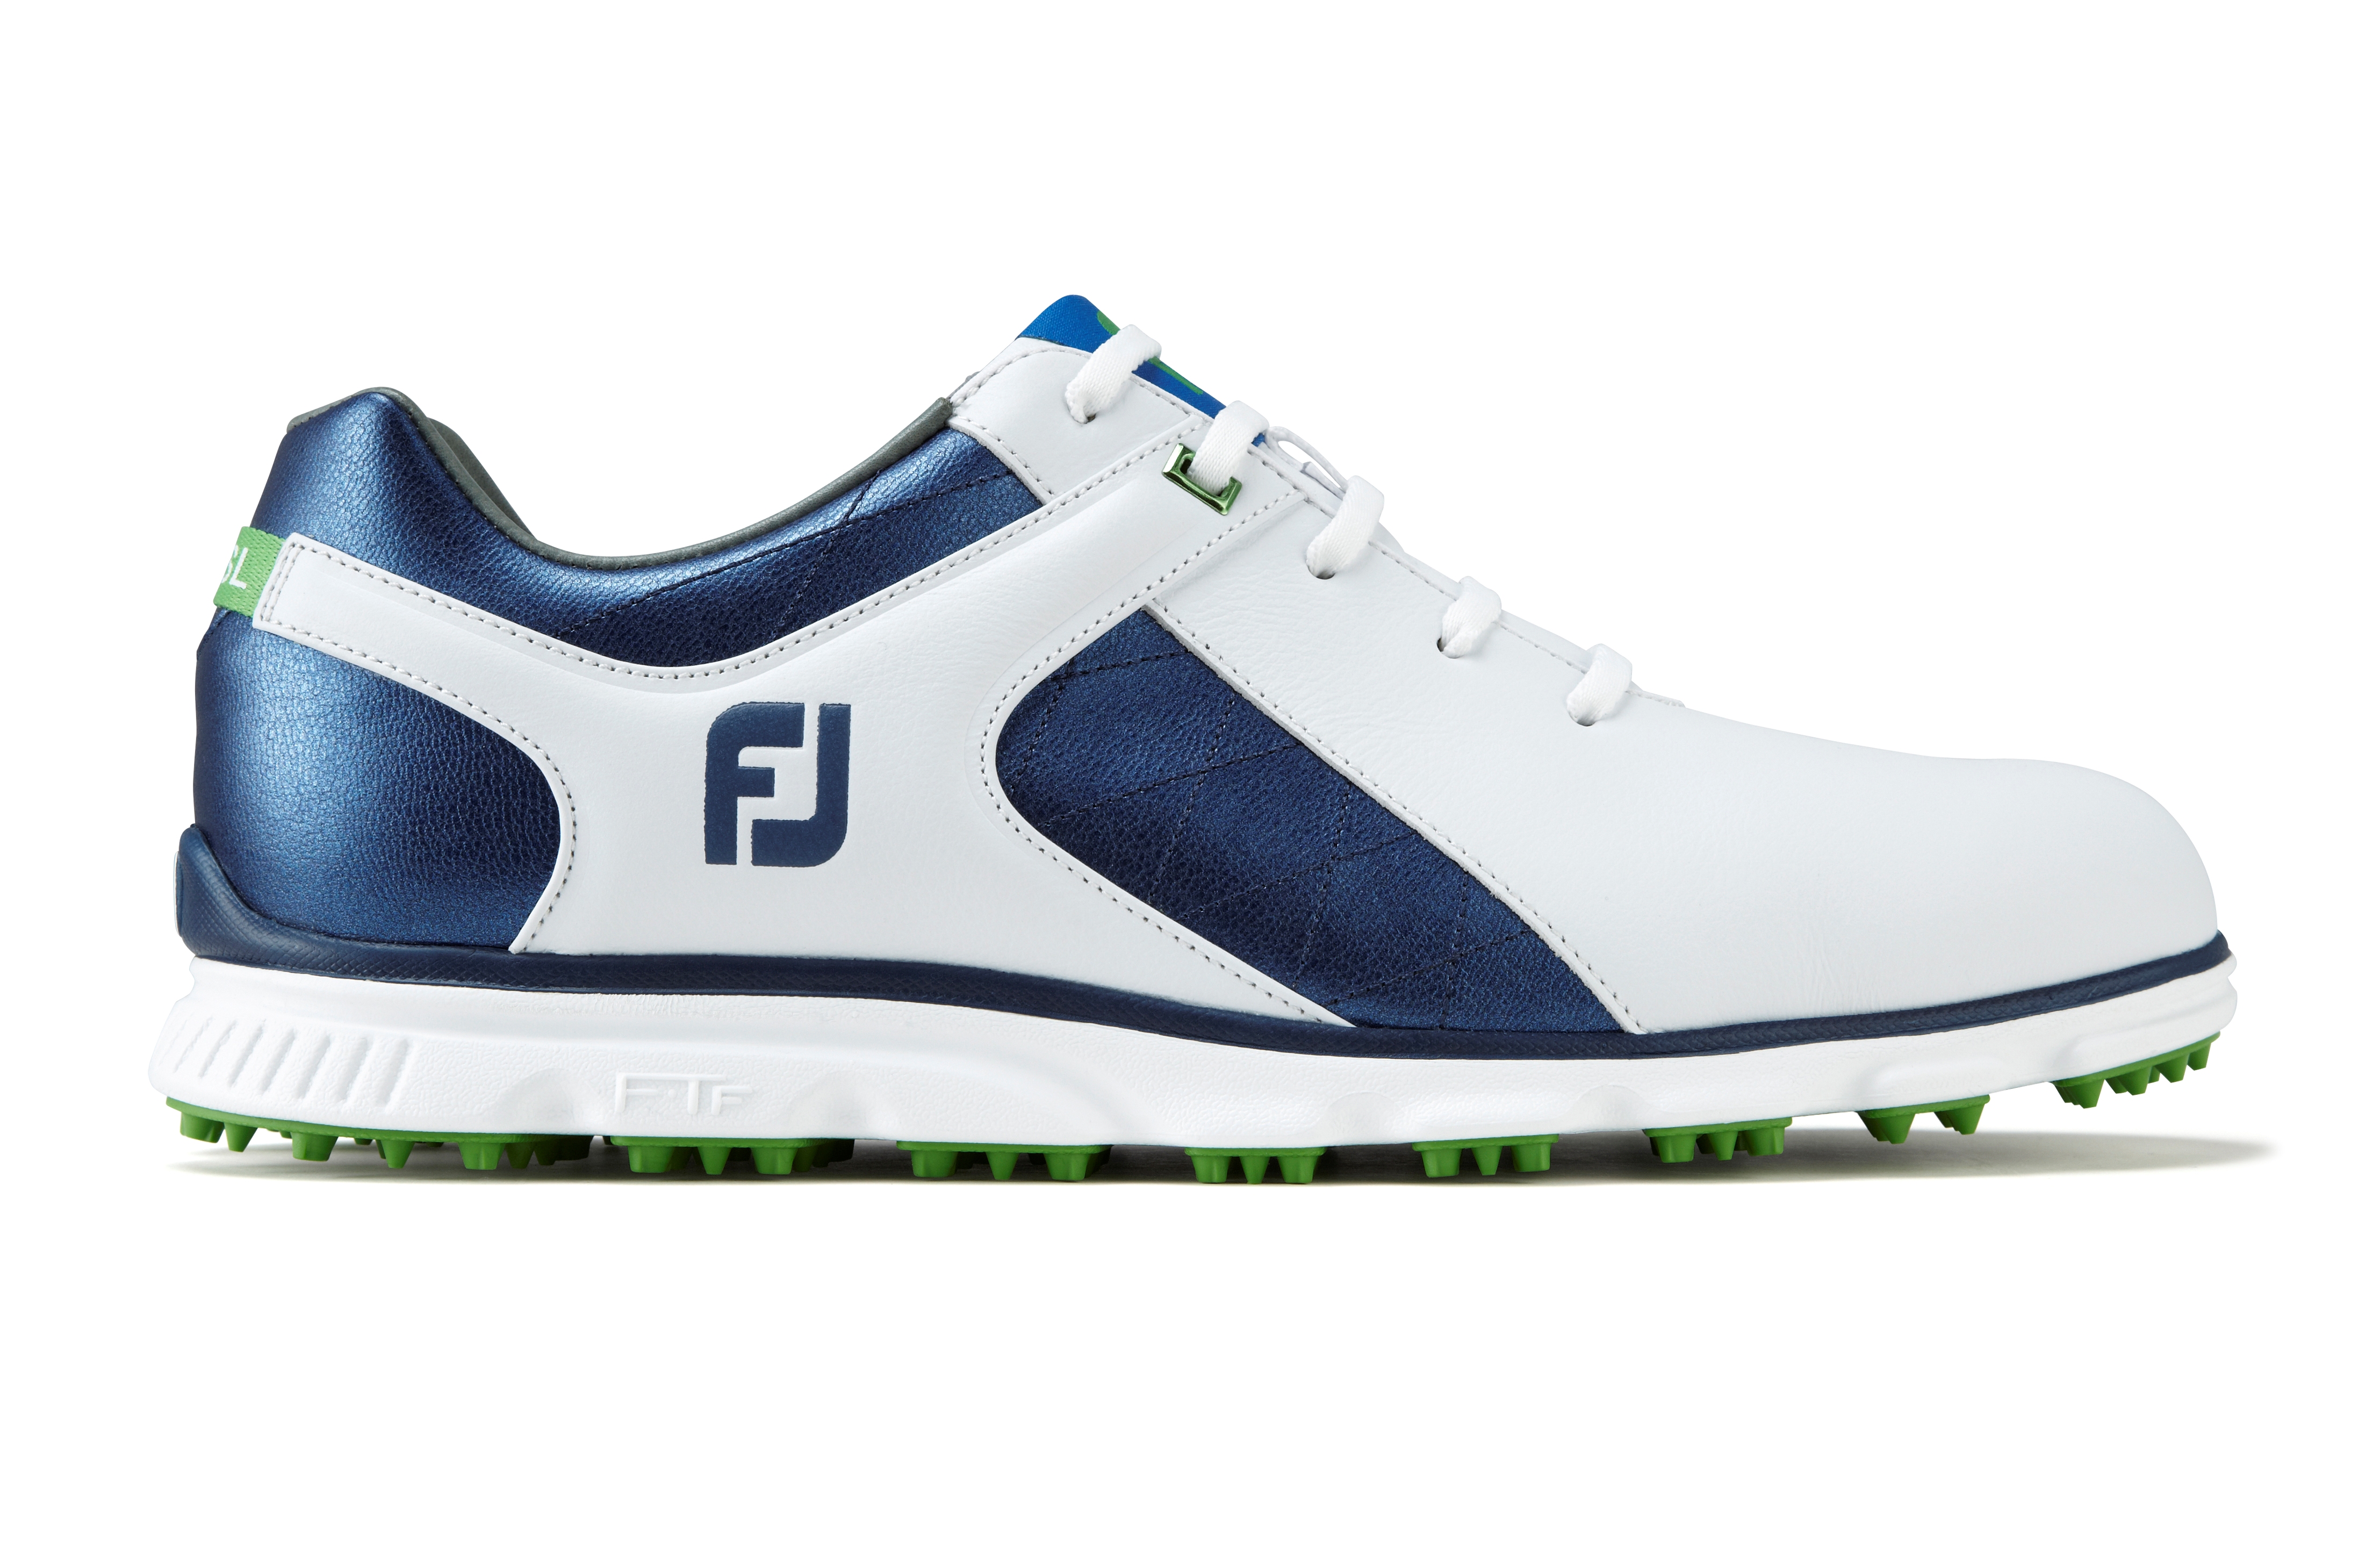 FootJoy launches Pro/SL shoe